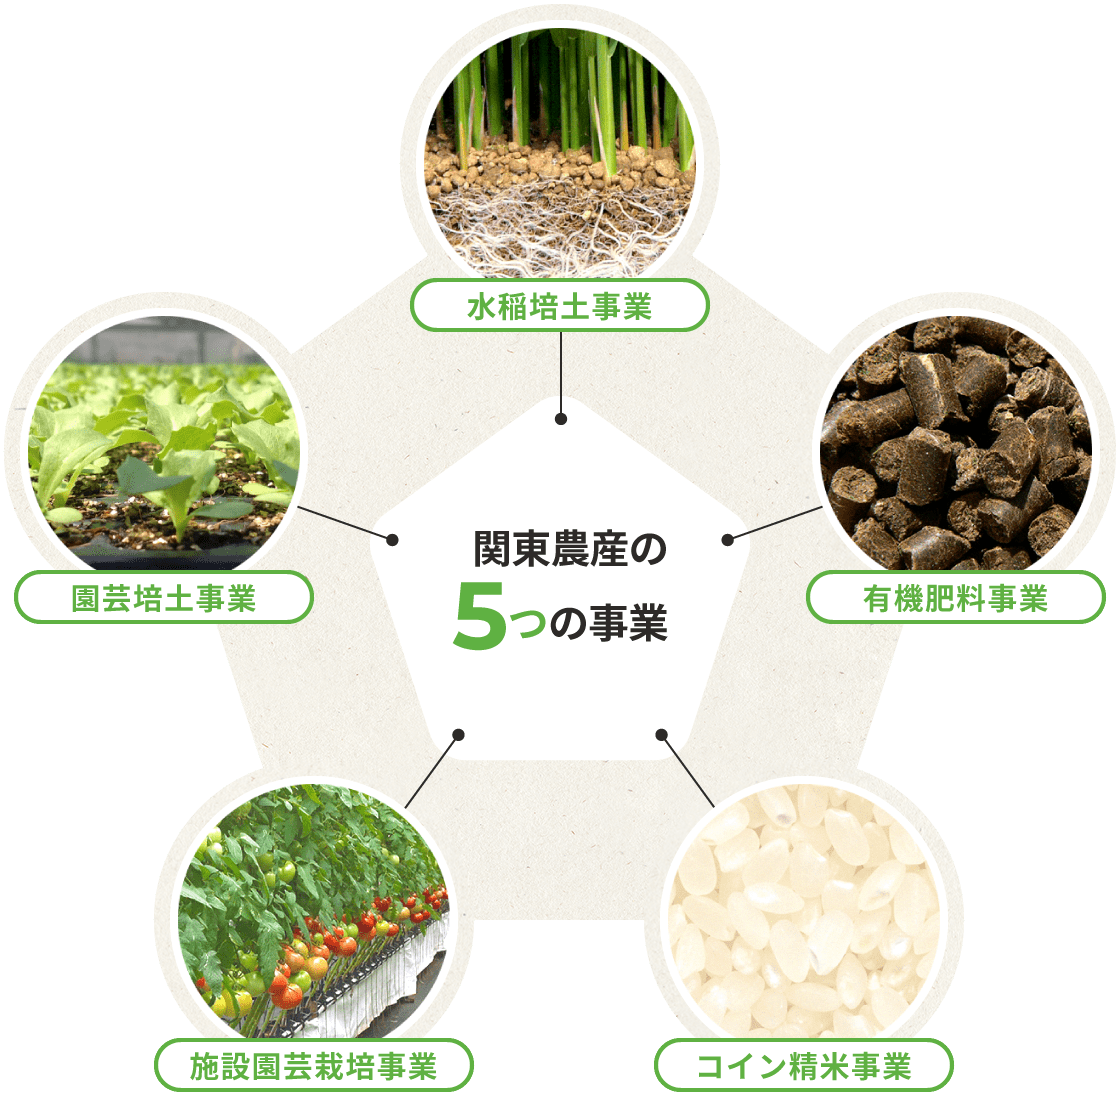 関東農産の5つの事業